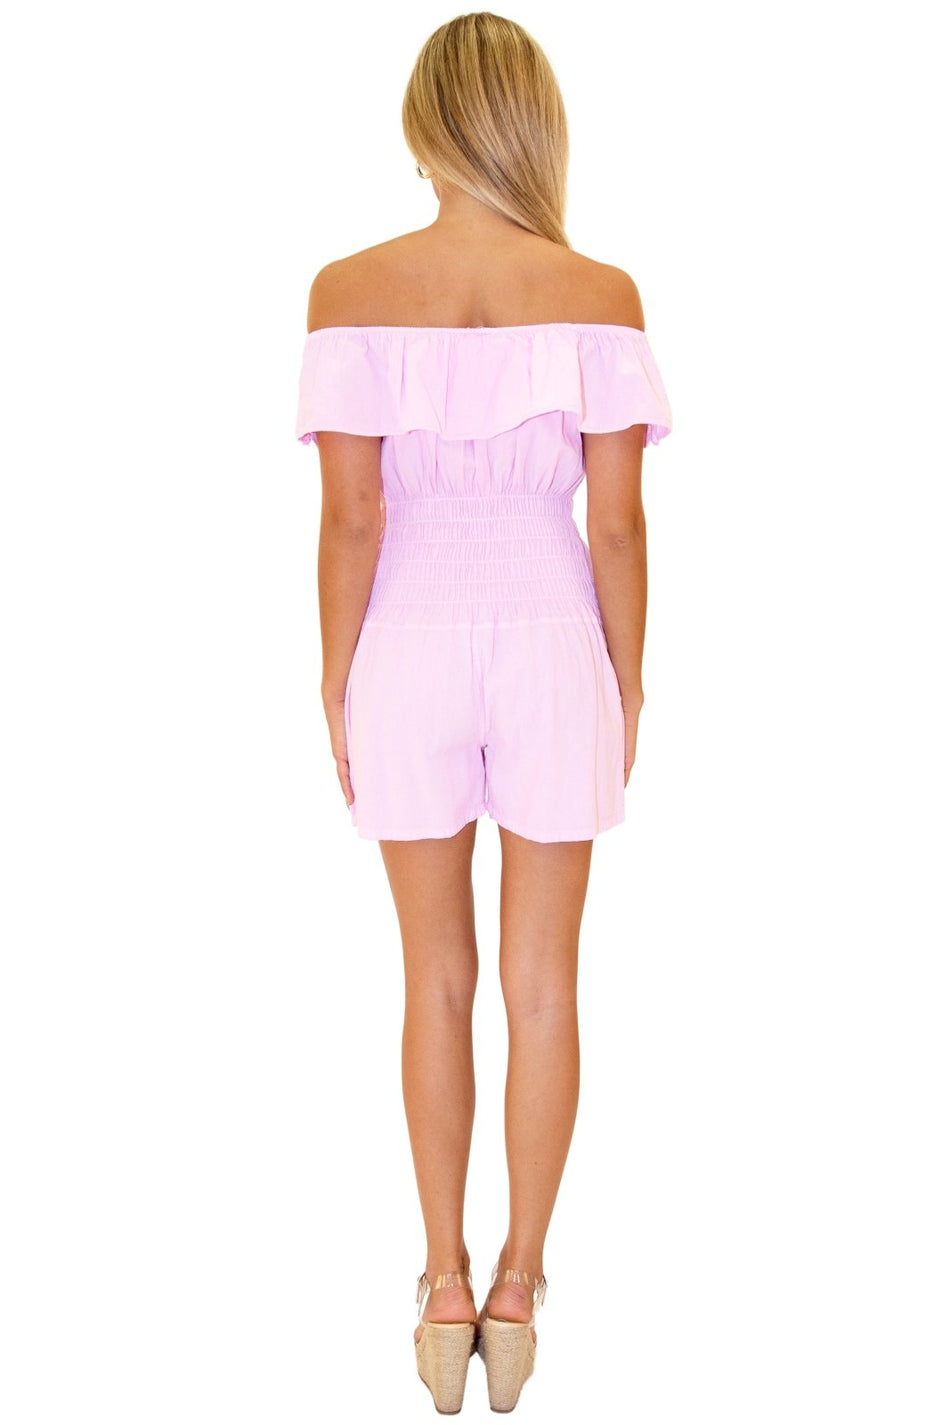 100% Cotton 'Ava' Belted Romper Pink - Seaspice Resort Wear